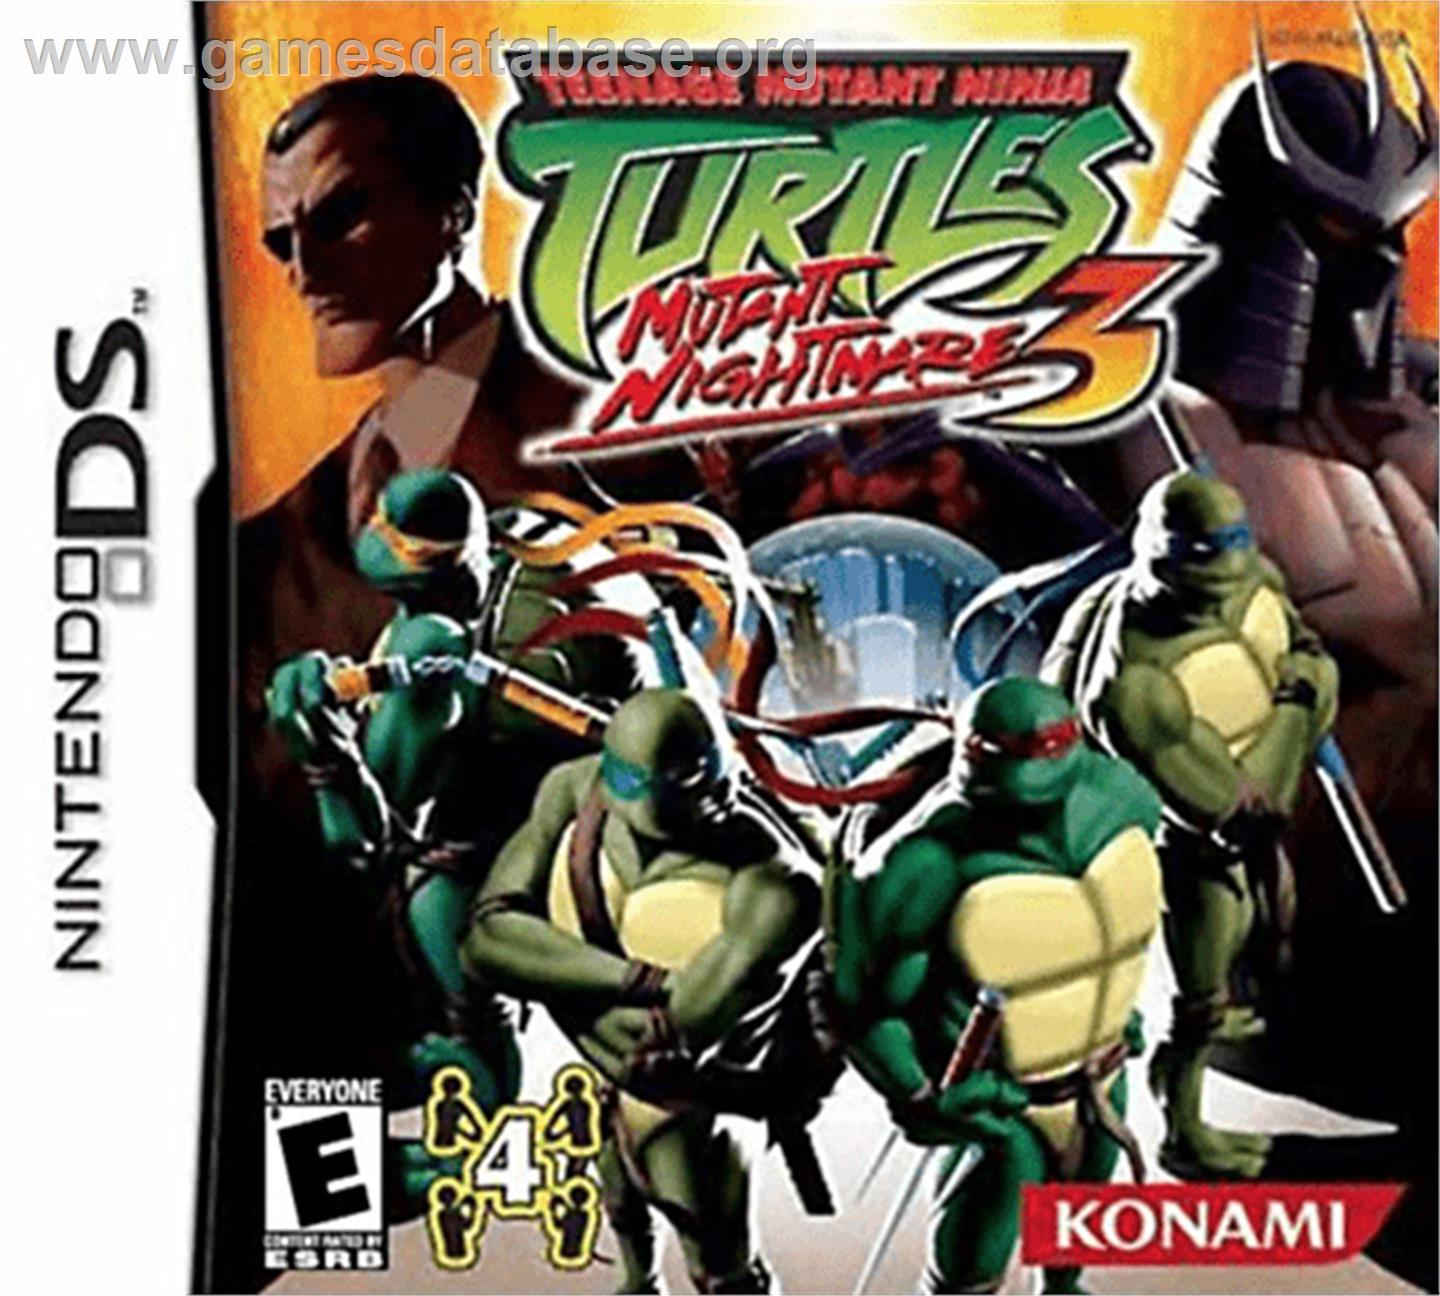 Teenage Mutant Ninja Turtles 3: Mutant Nightmare - Nintendo DS - Artwork - Box